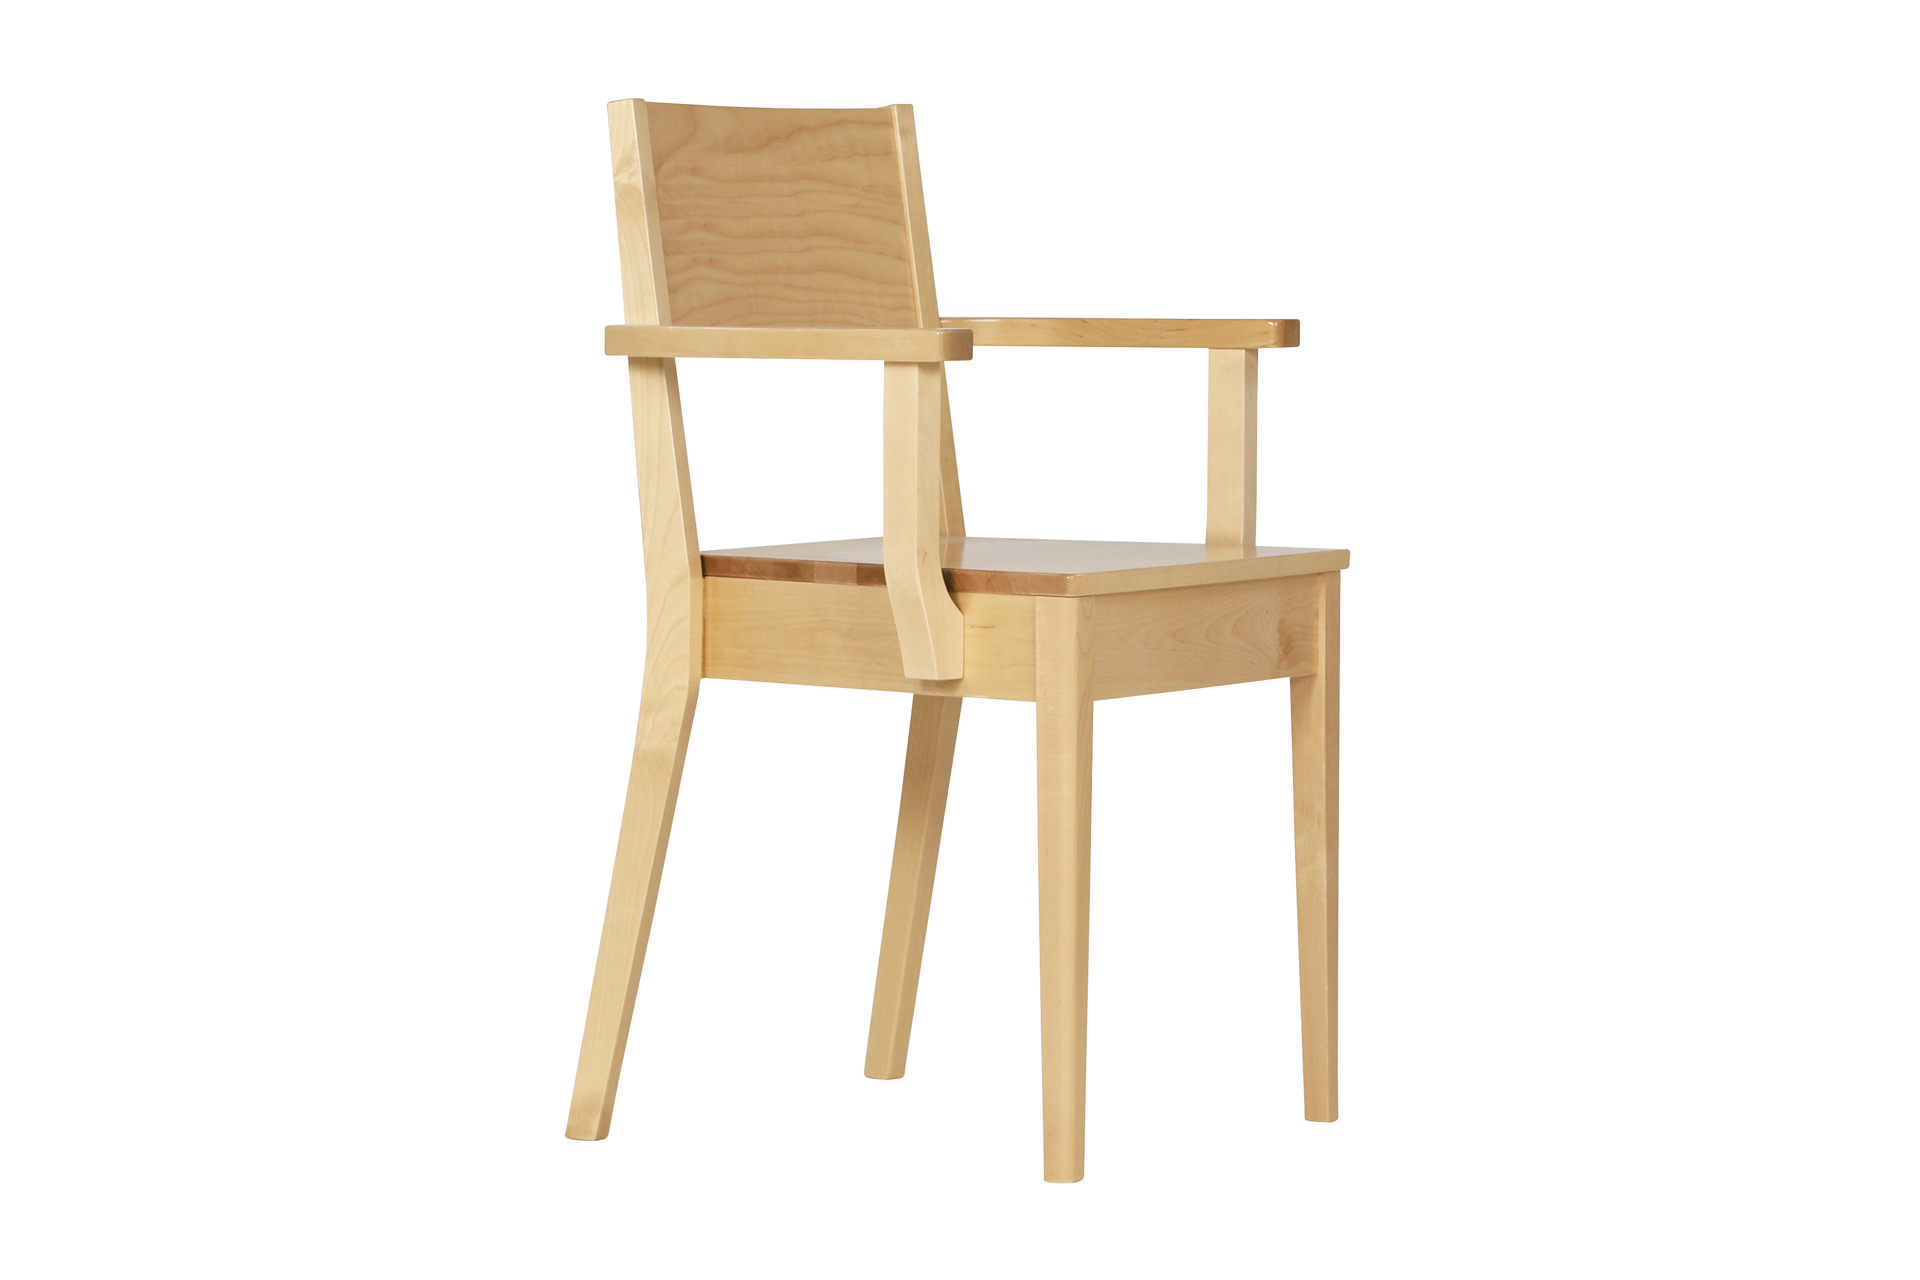 Isla-tuolia saatavilla valkoiseksi maalattuna tai lakattuna koivuna. Saatavilla nostokahvat ja irrotettava verhoilu istuimeen tai selkänojaan.